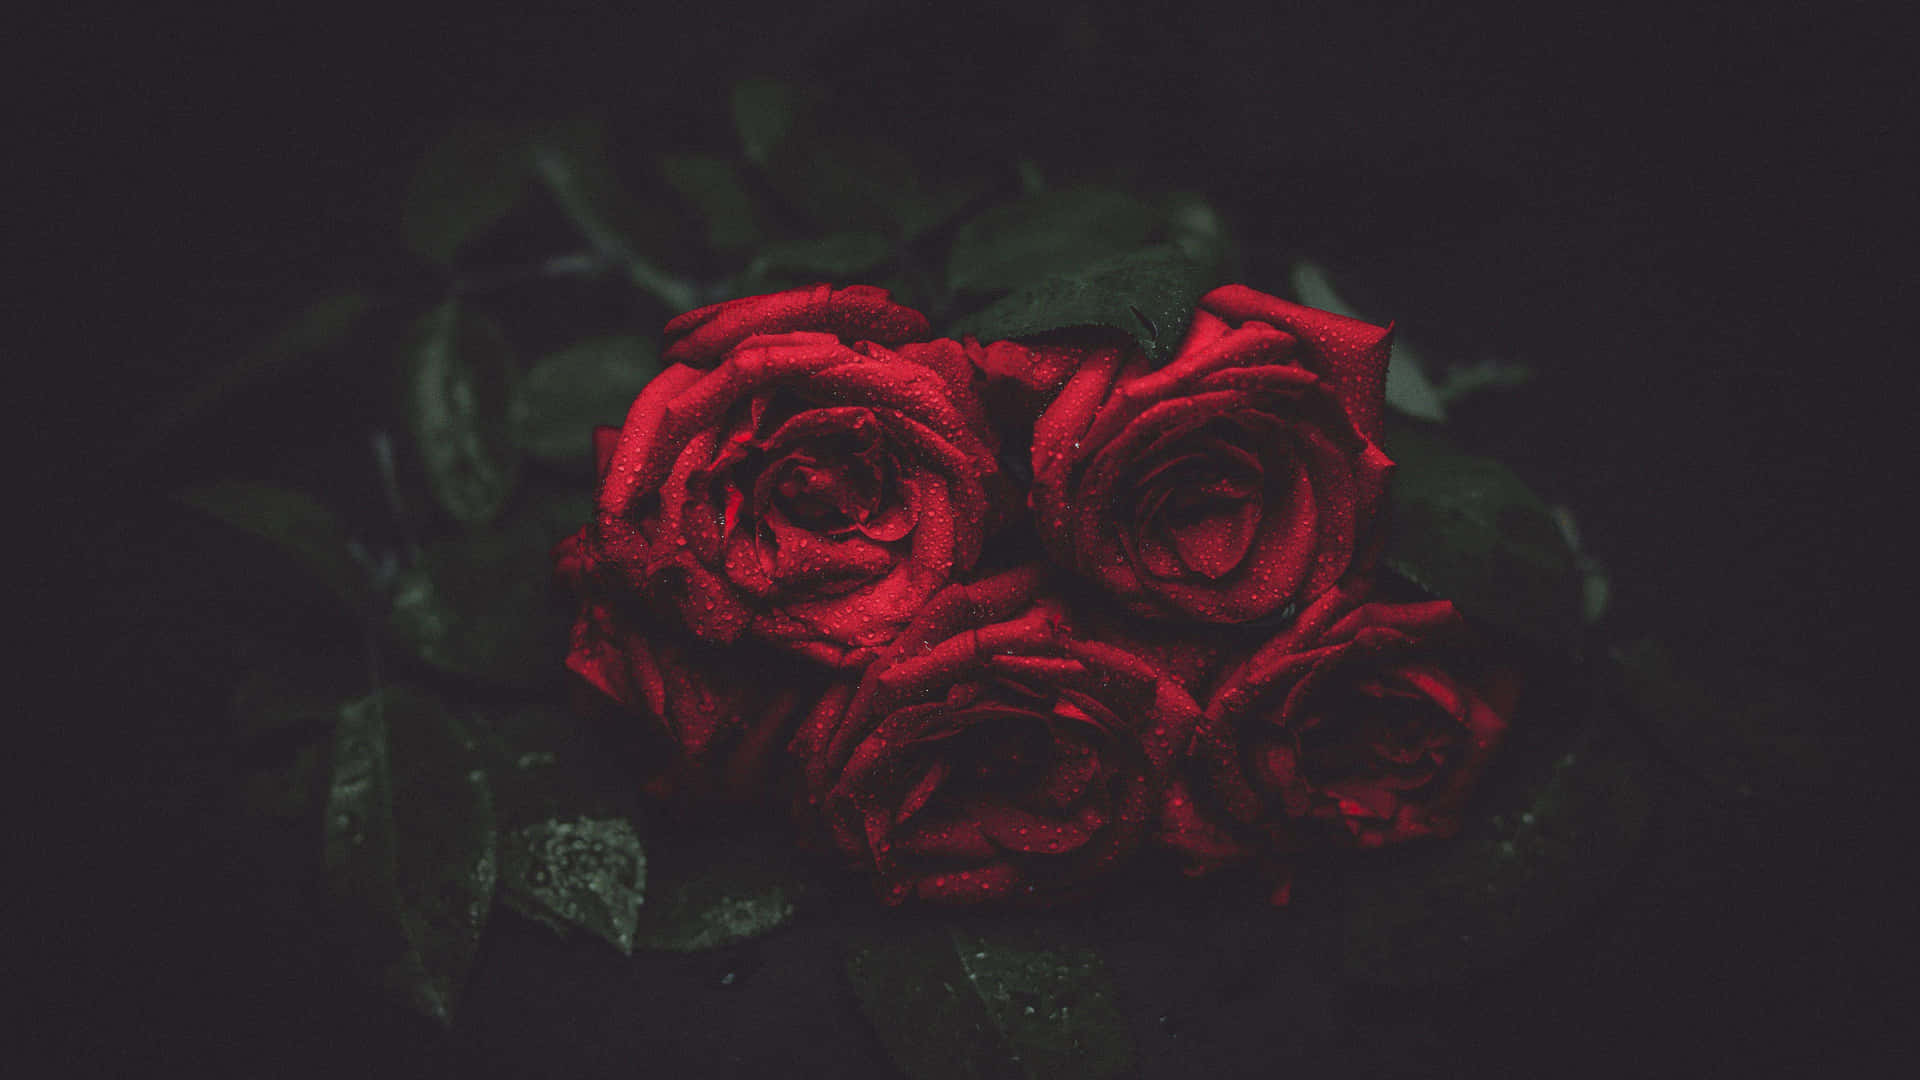 Eineeinzelne Rote Rose, Stolz Aus Dem Hintergrund Ragend.